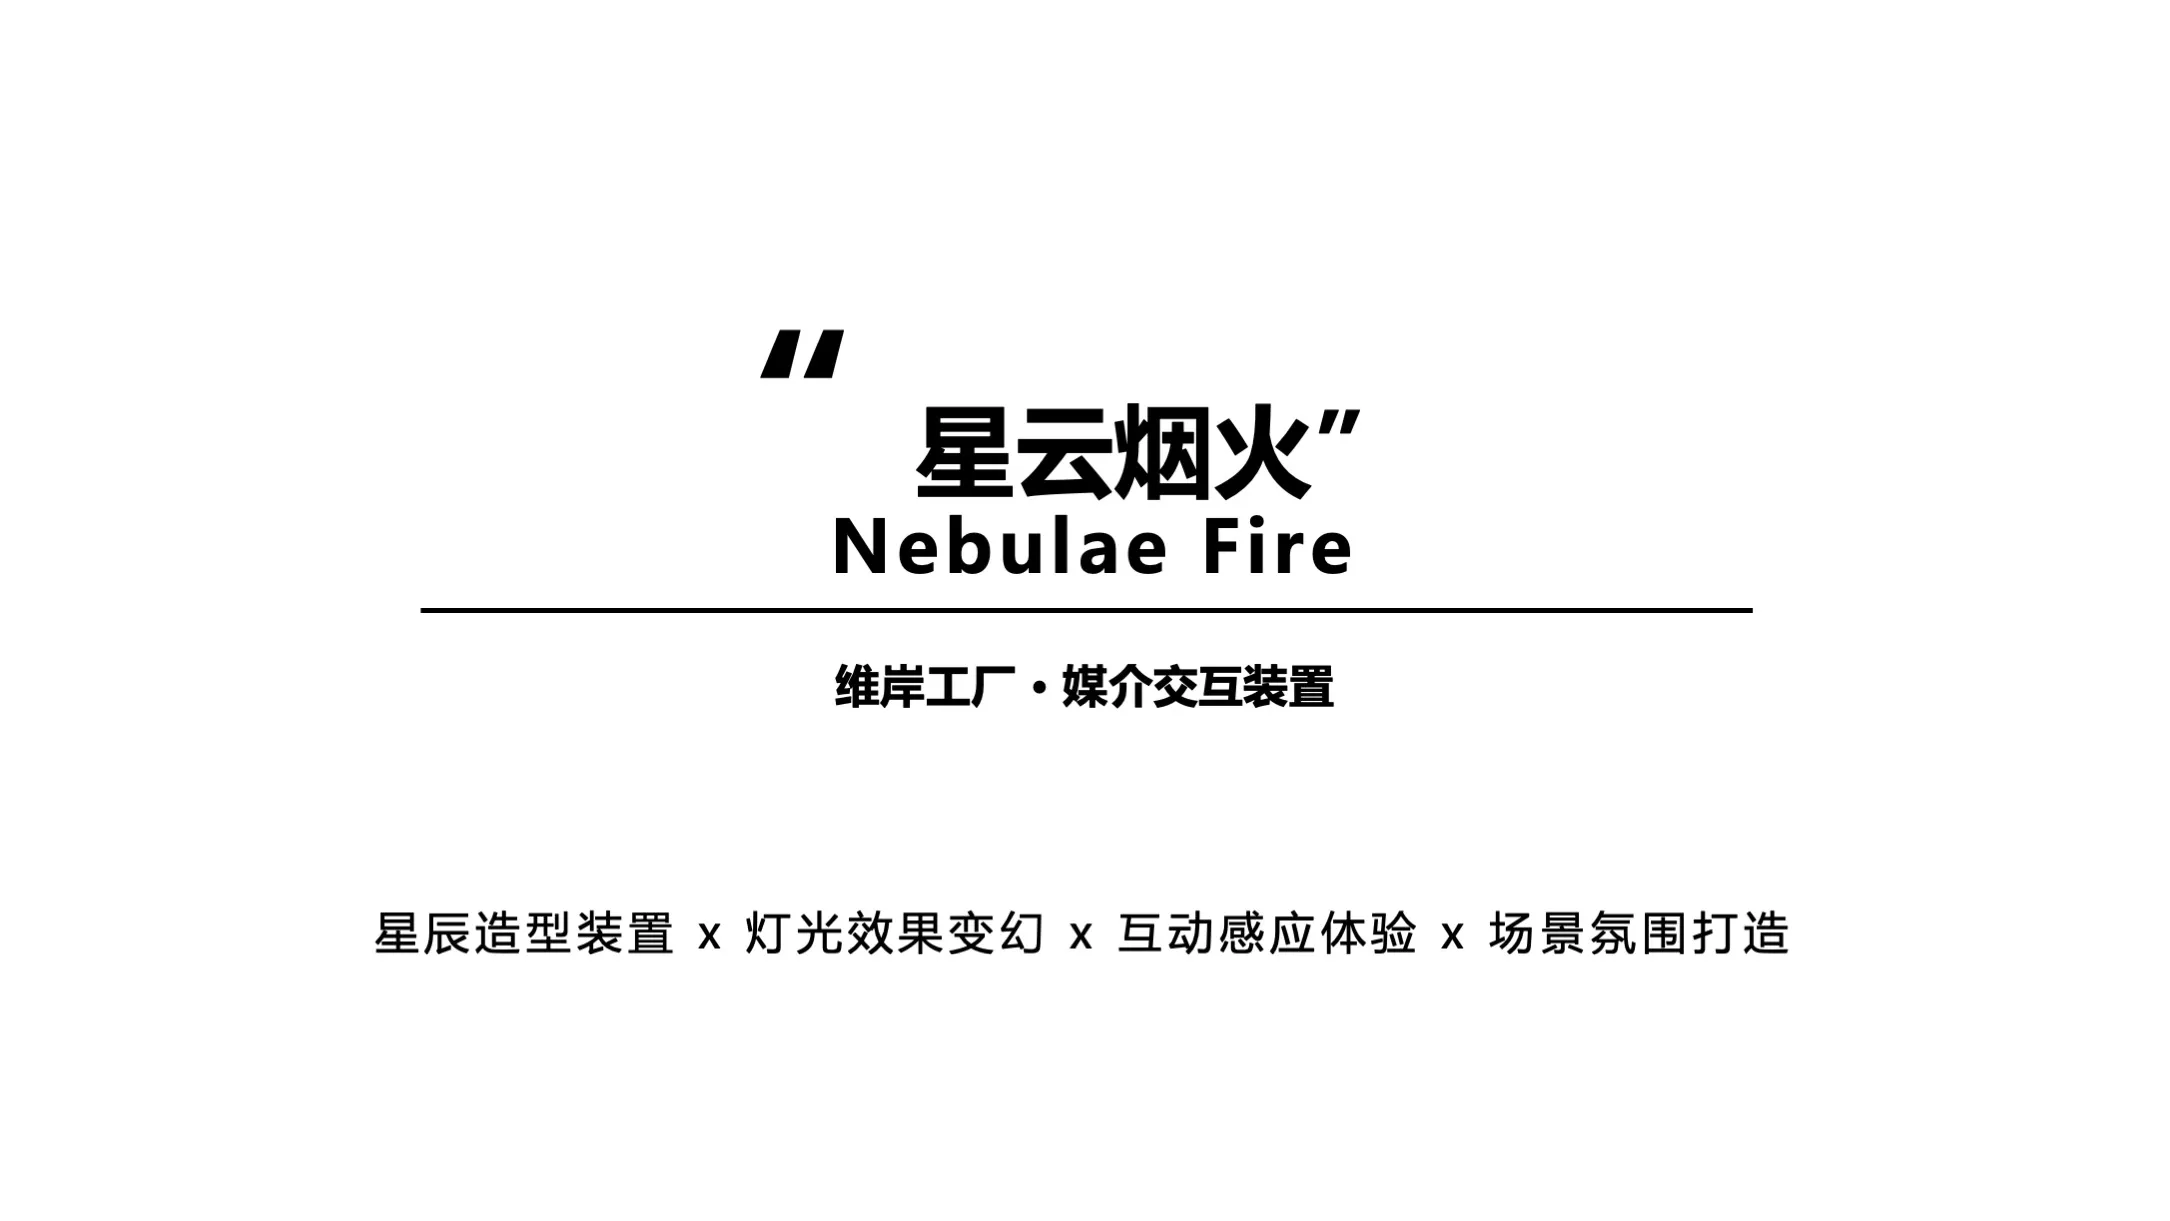 【星云烟火】Nebulae Fire媒介交互装置-感映艺术出